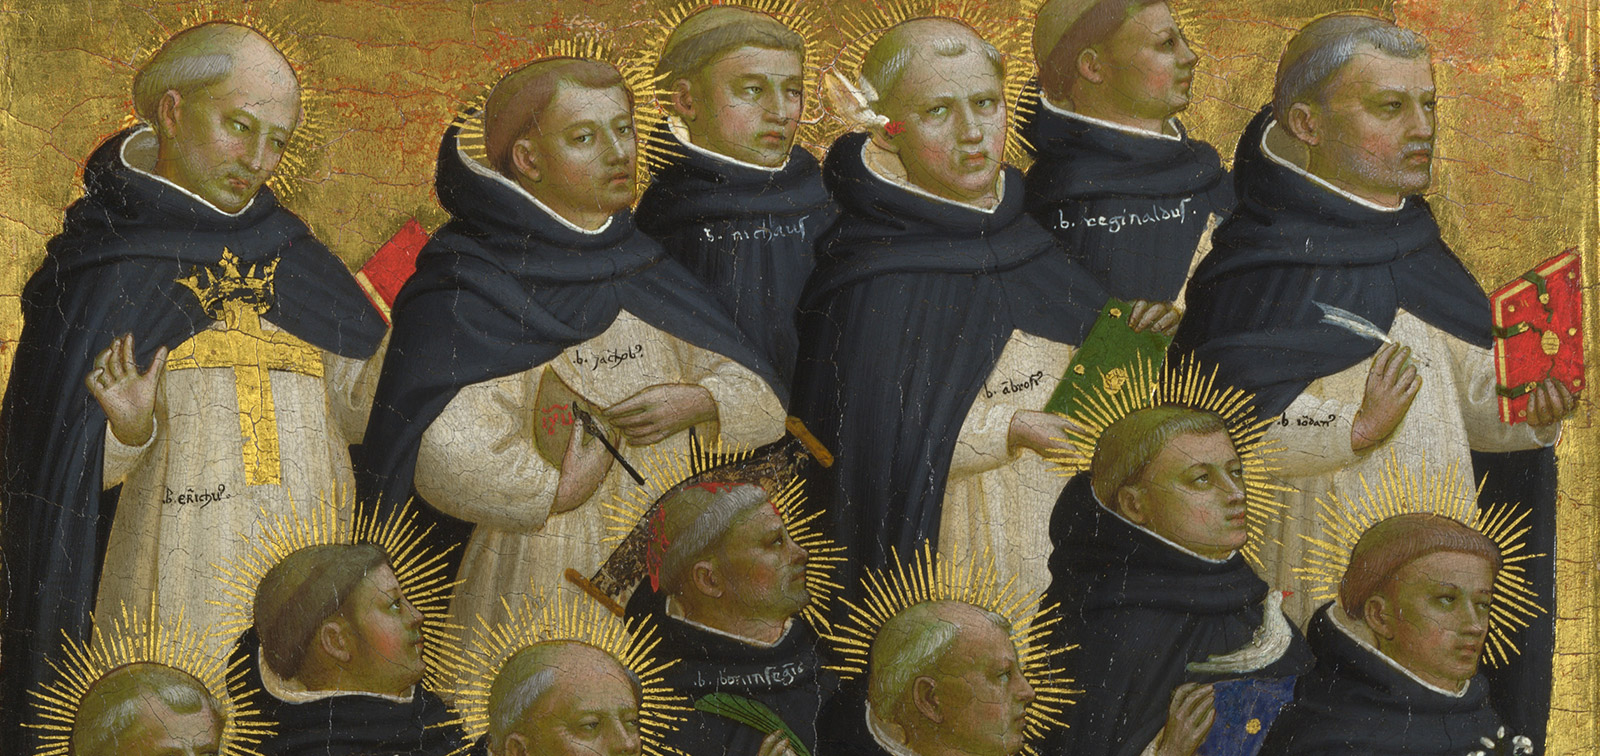 Fra Angelico y los inicios del Renacimiento en Florencia